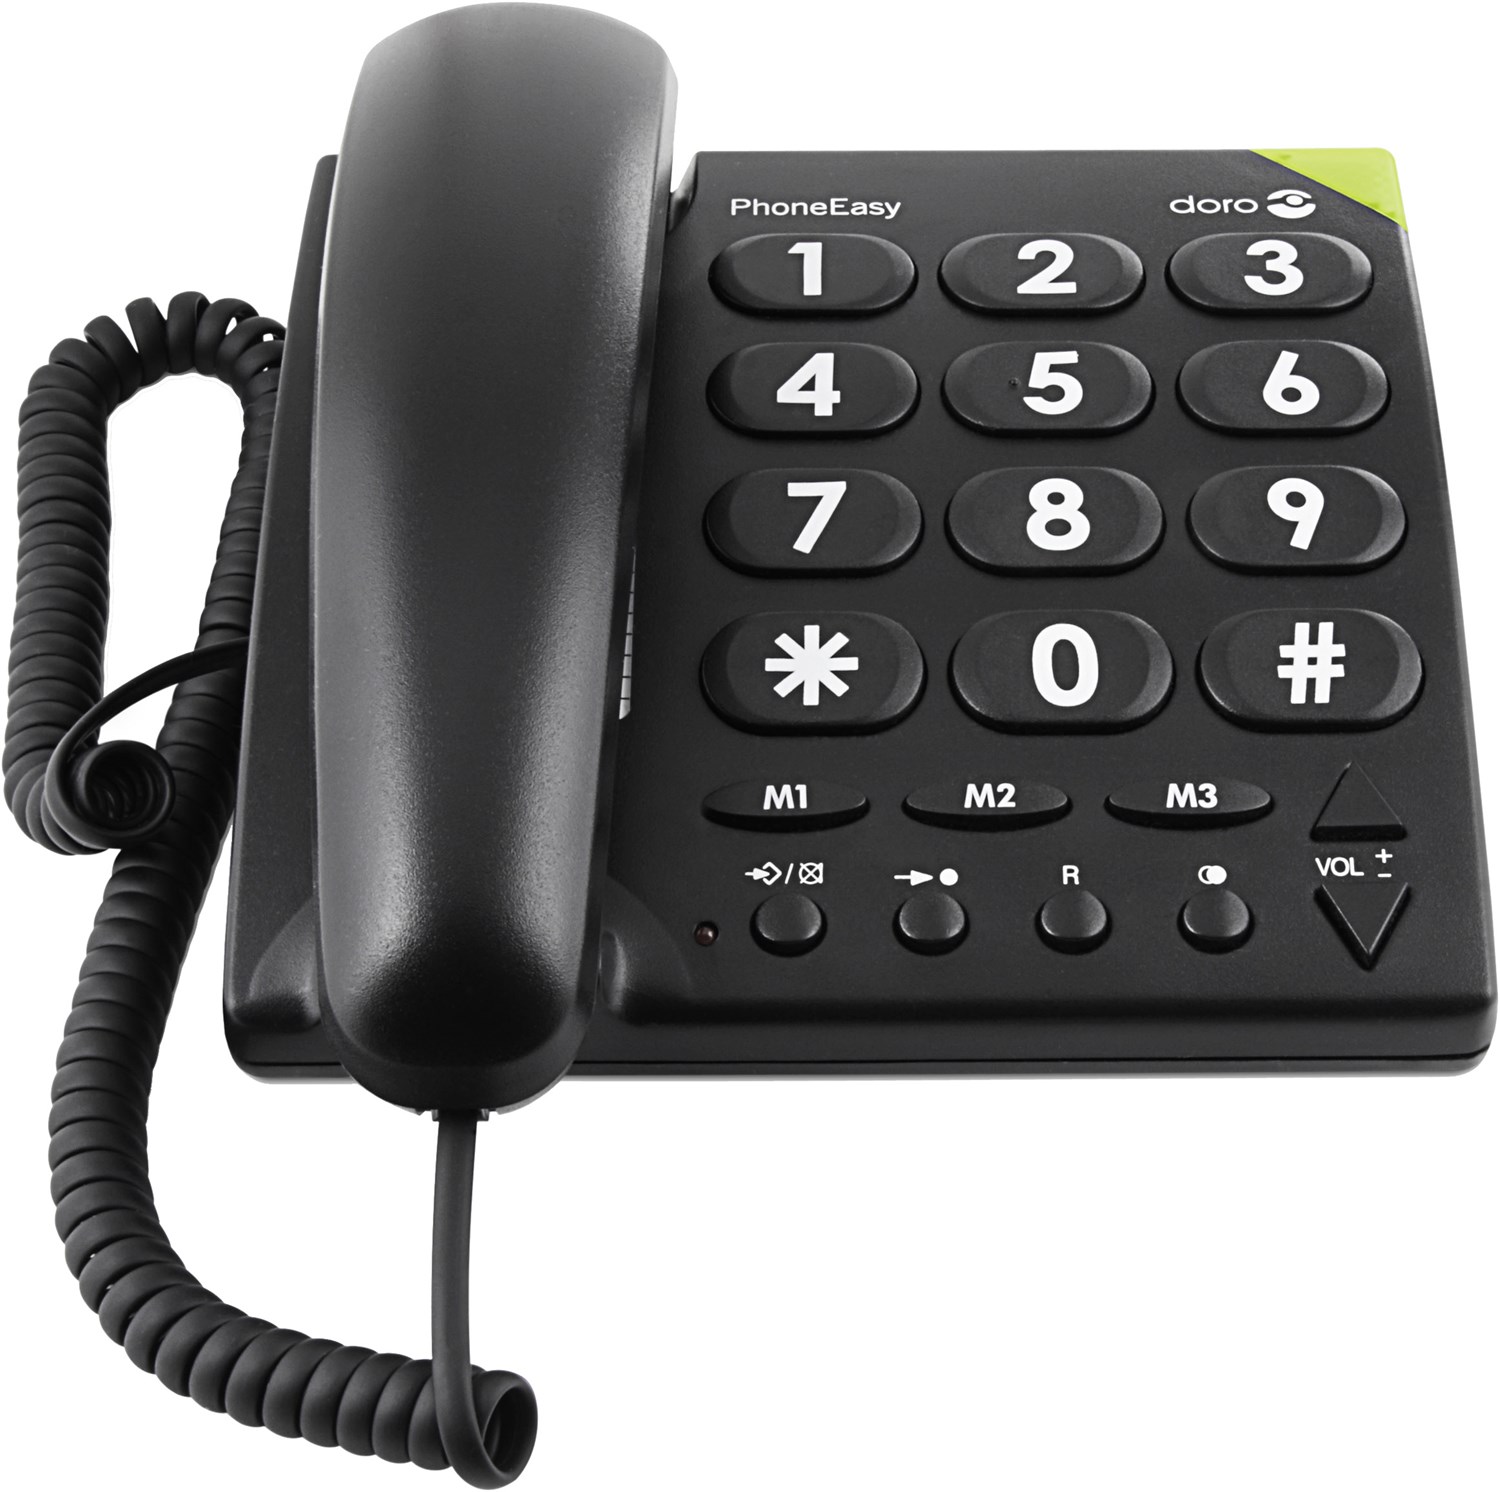 PhoneEasy 311 c Schnurgebundenes Telefon schwarz von Doro